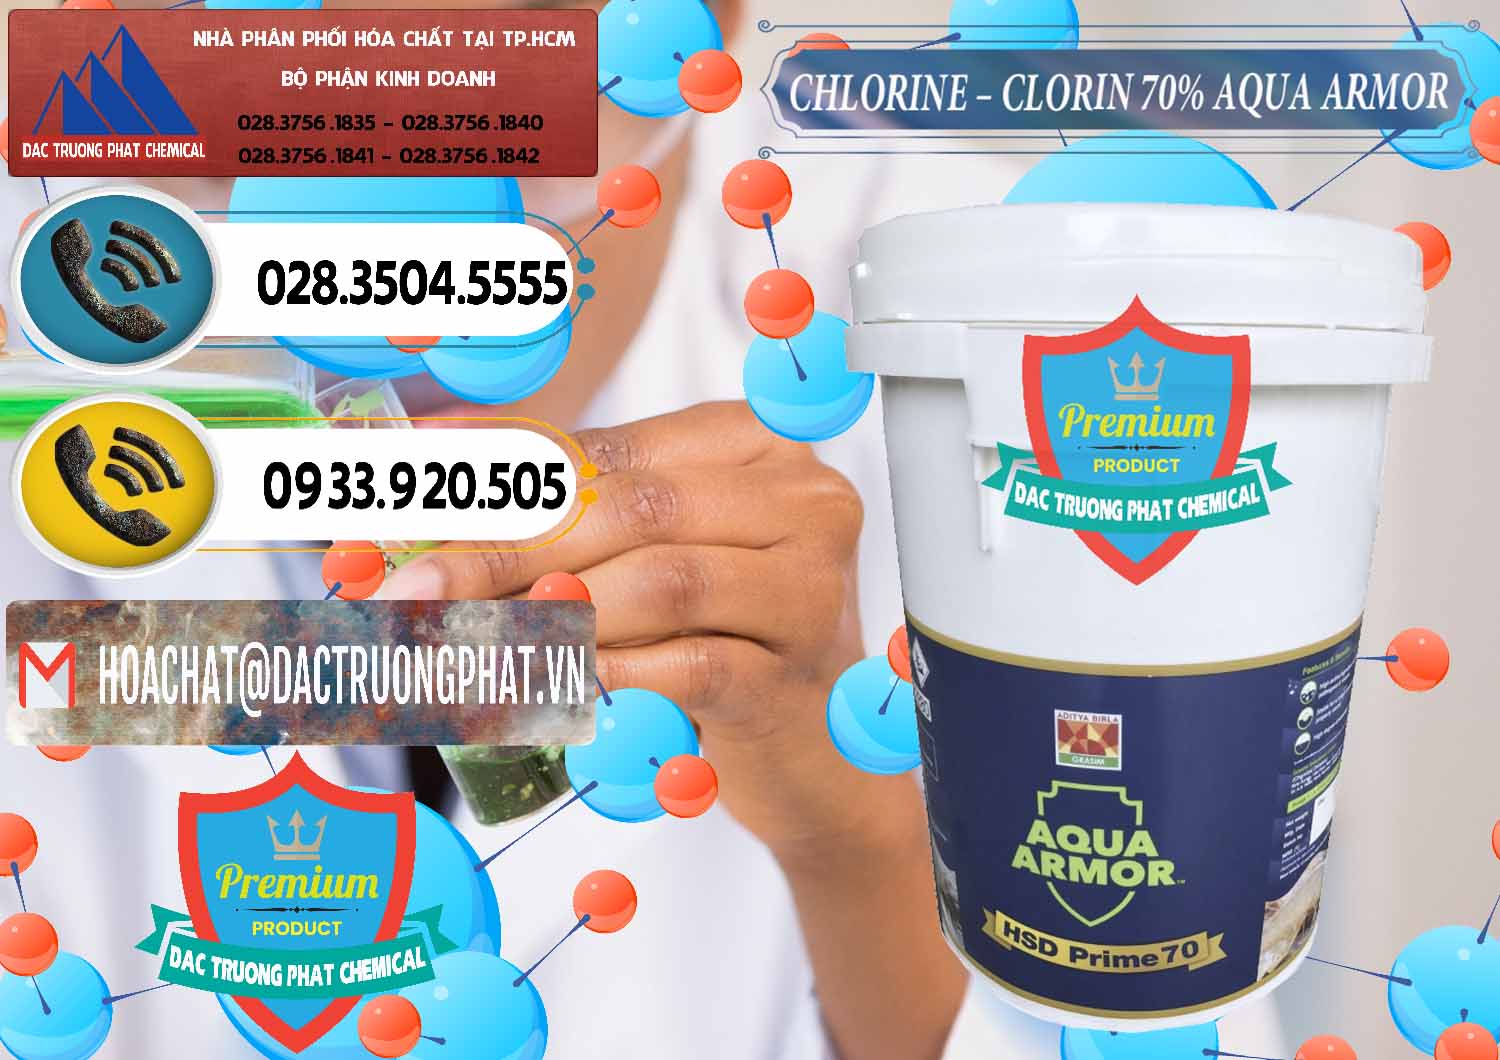 Công ty nhập khẩu ( bán ) Chlorine – Clorin 70% Aqua Armor Aditya Birla Grasim Ấn Độ India - 0241 - Chuyên nhập khẩu - phân phối hóa chất tại TP.HCM - hoachatdetnhuom.vn